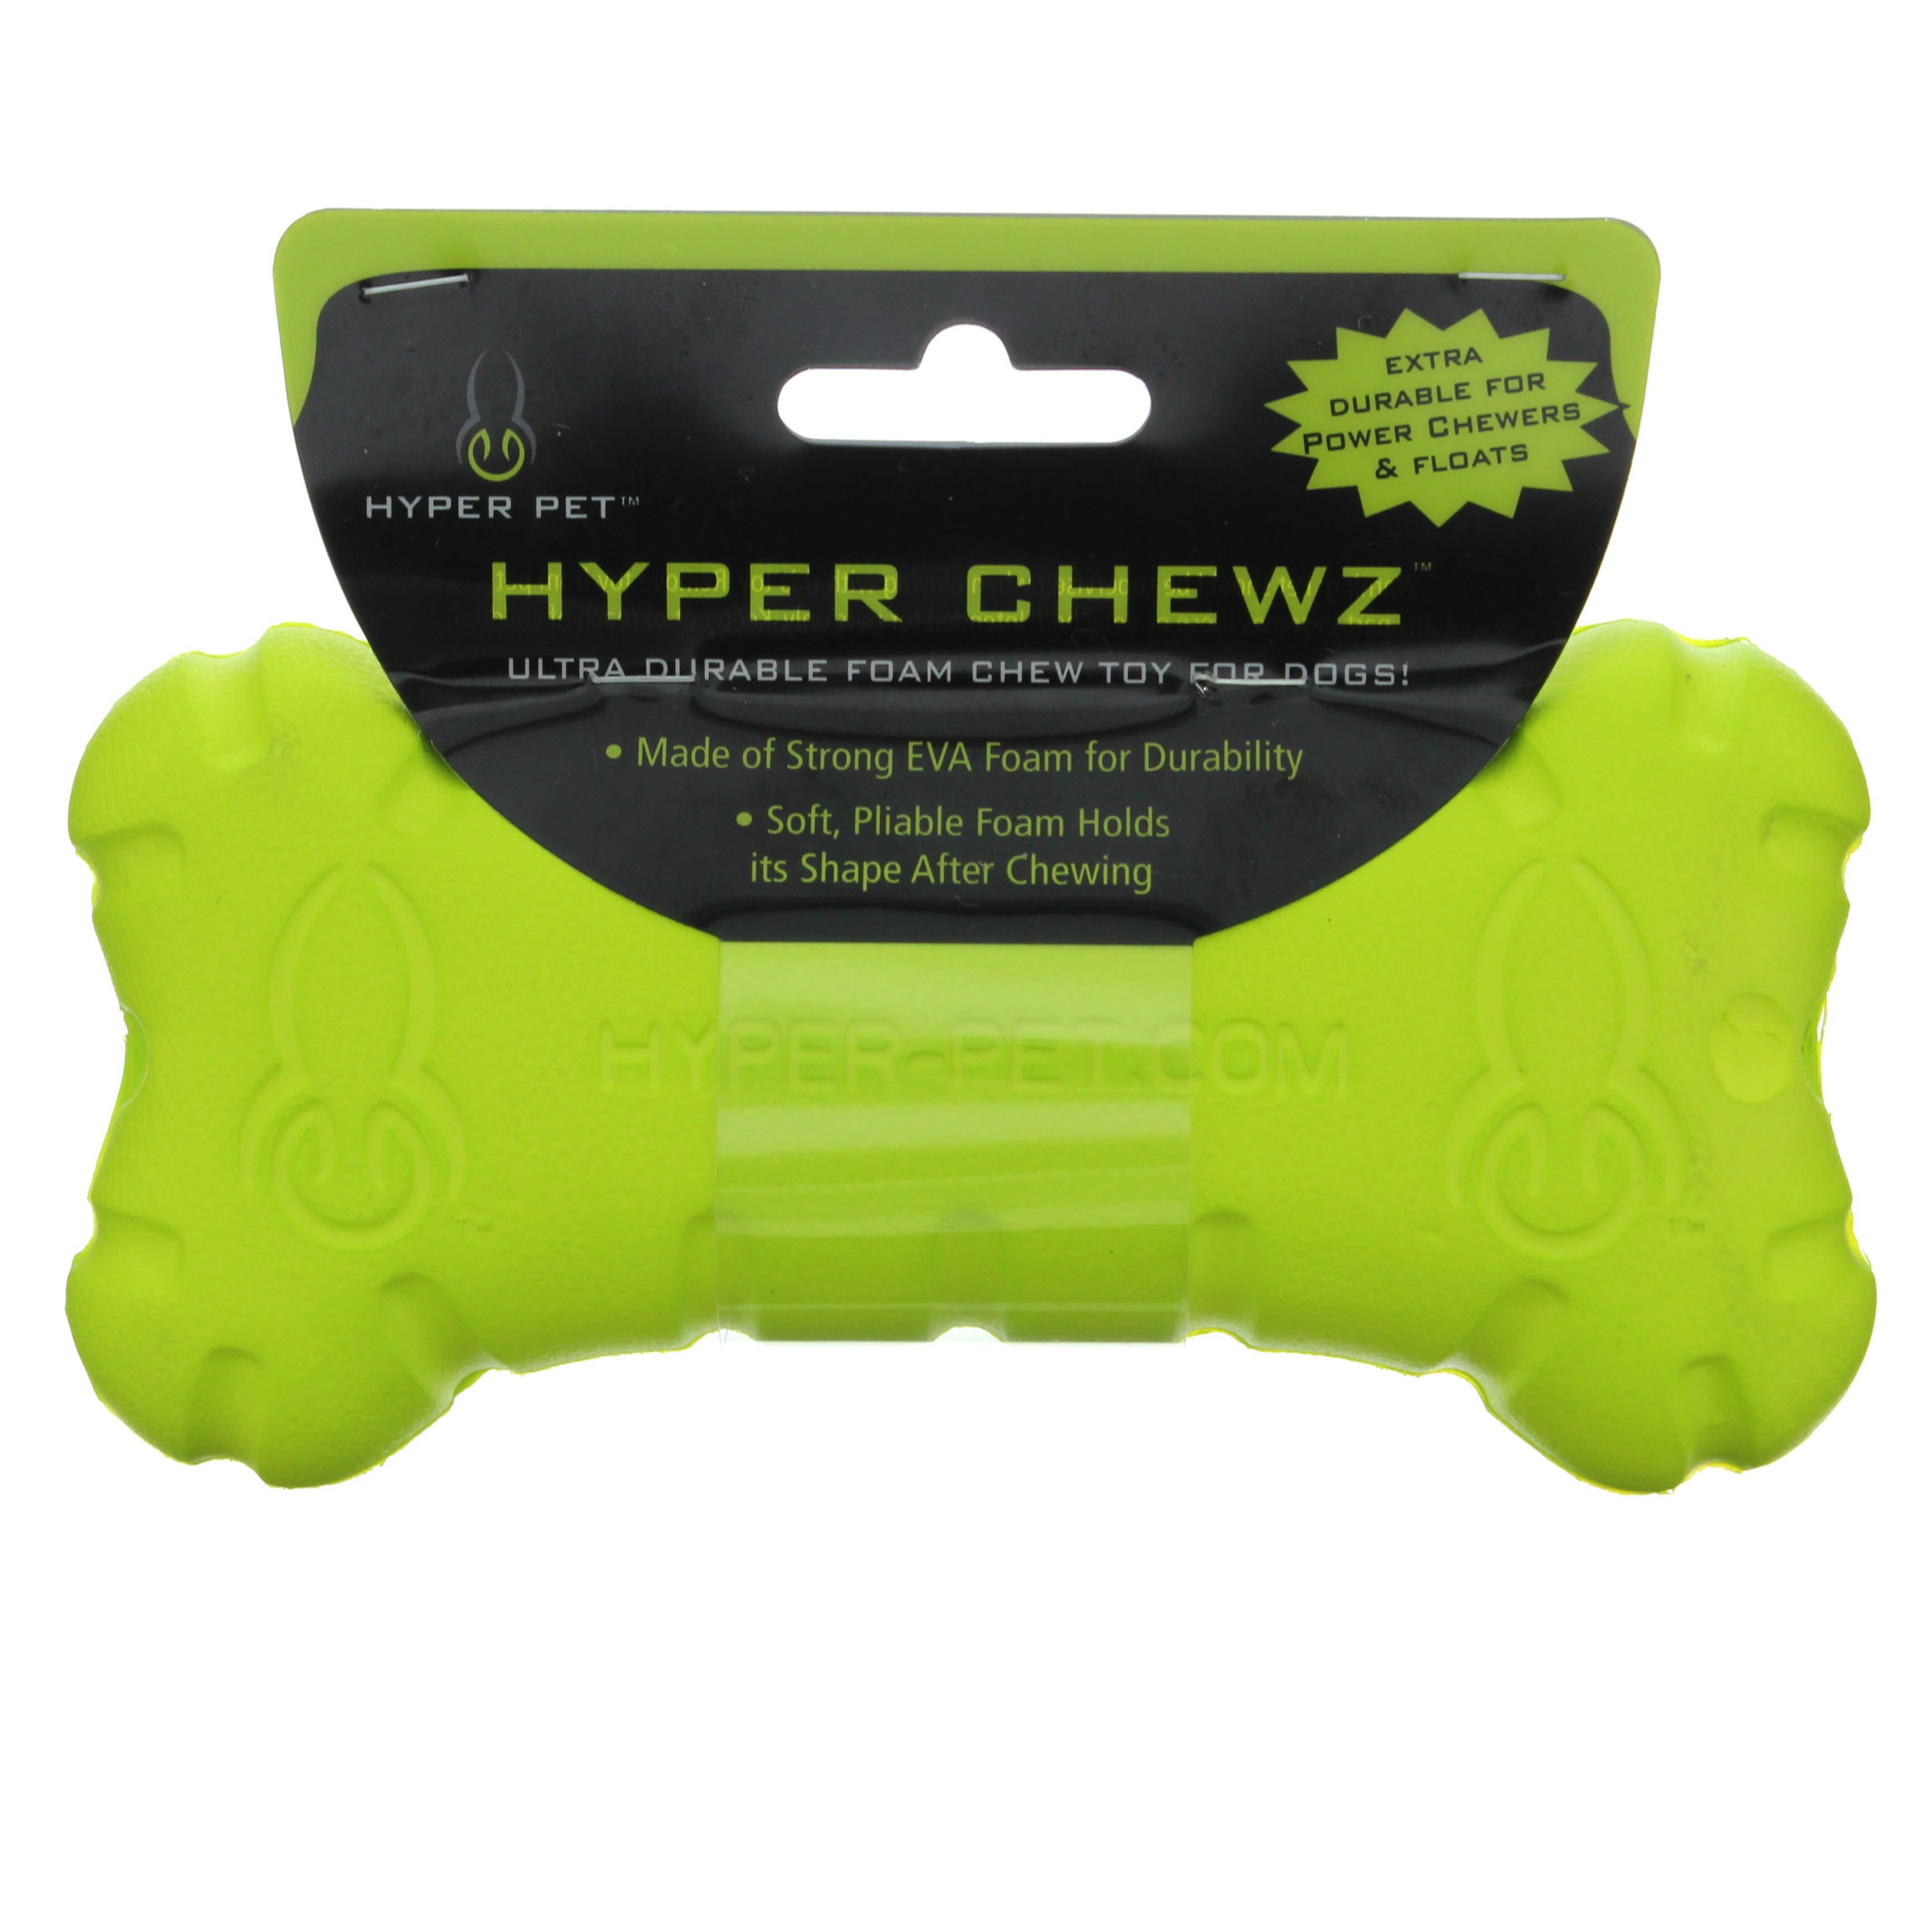 hyper pet hyper chewz